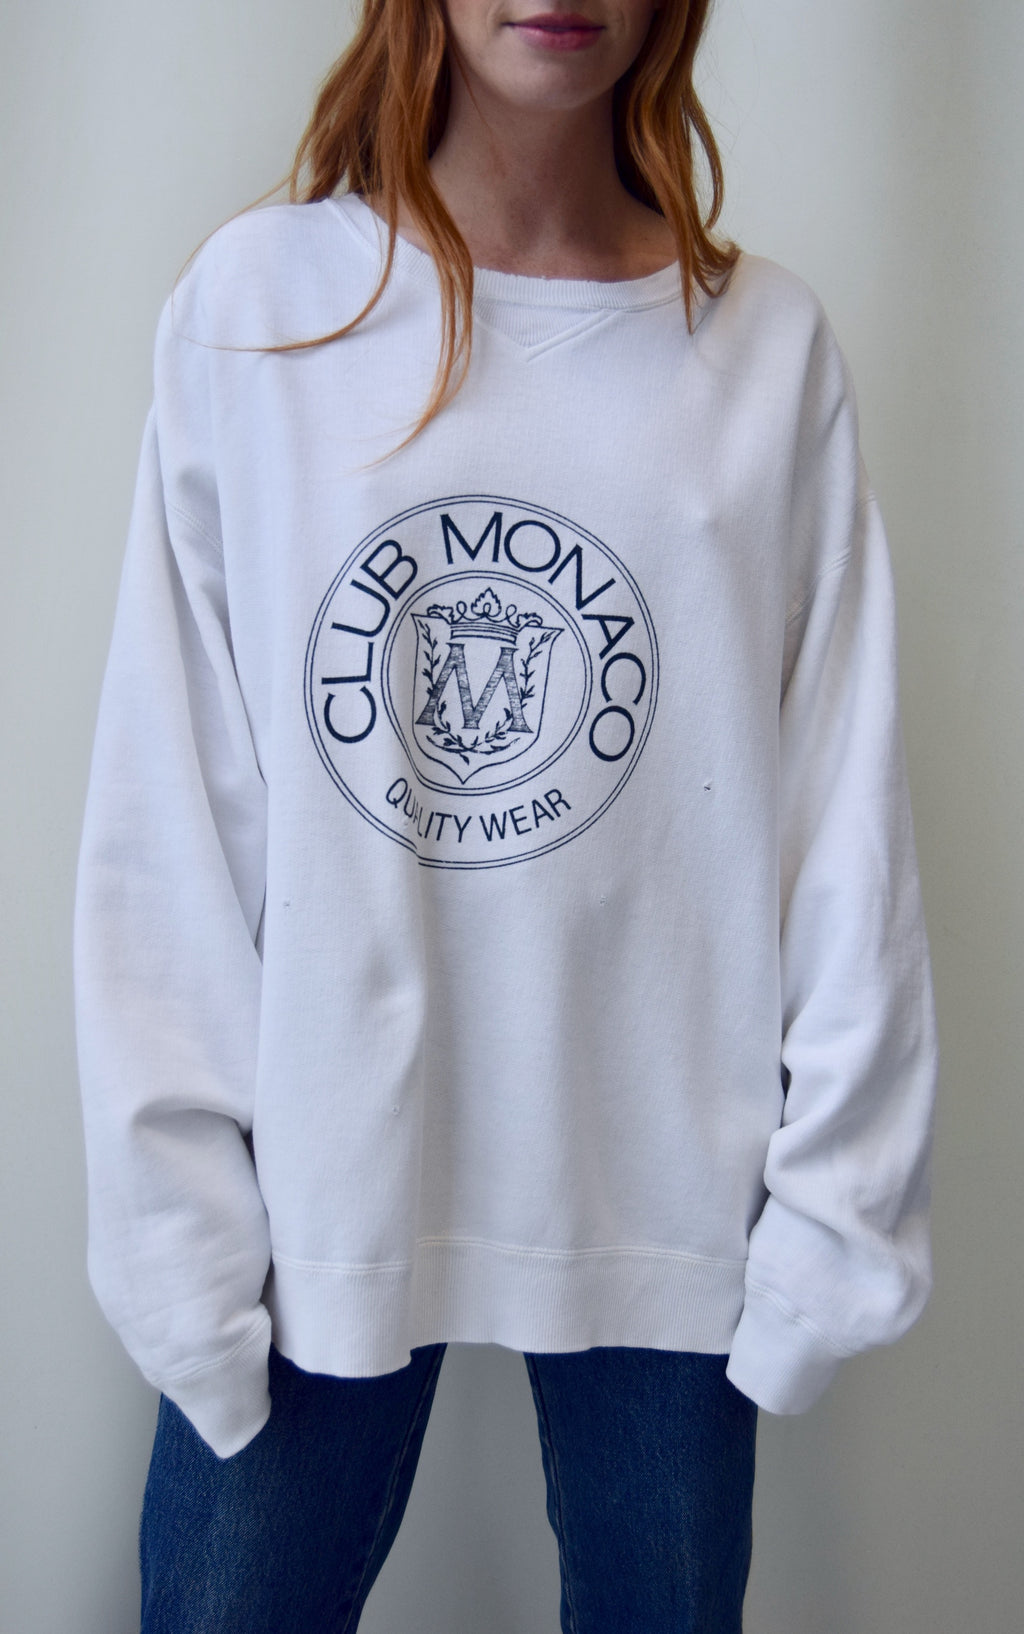 Classic "Club Monaco" Sweatshirt